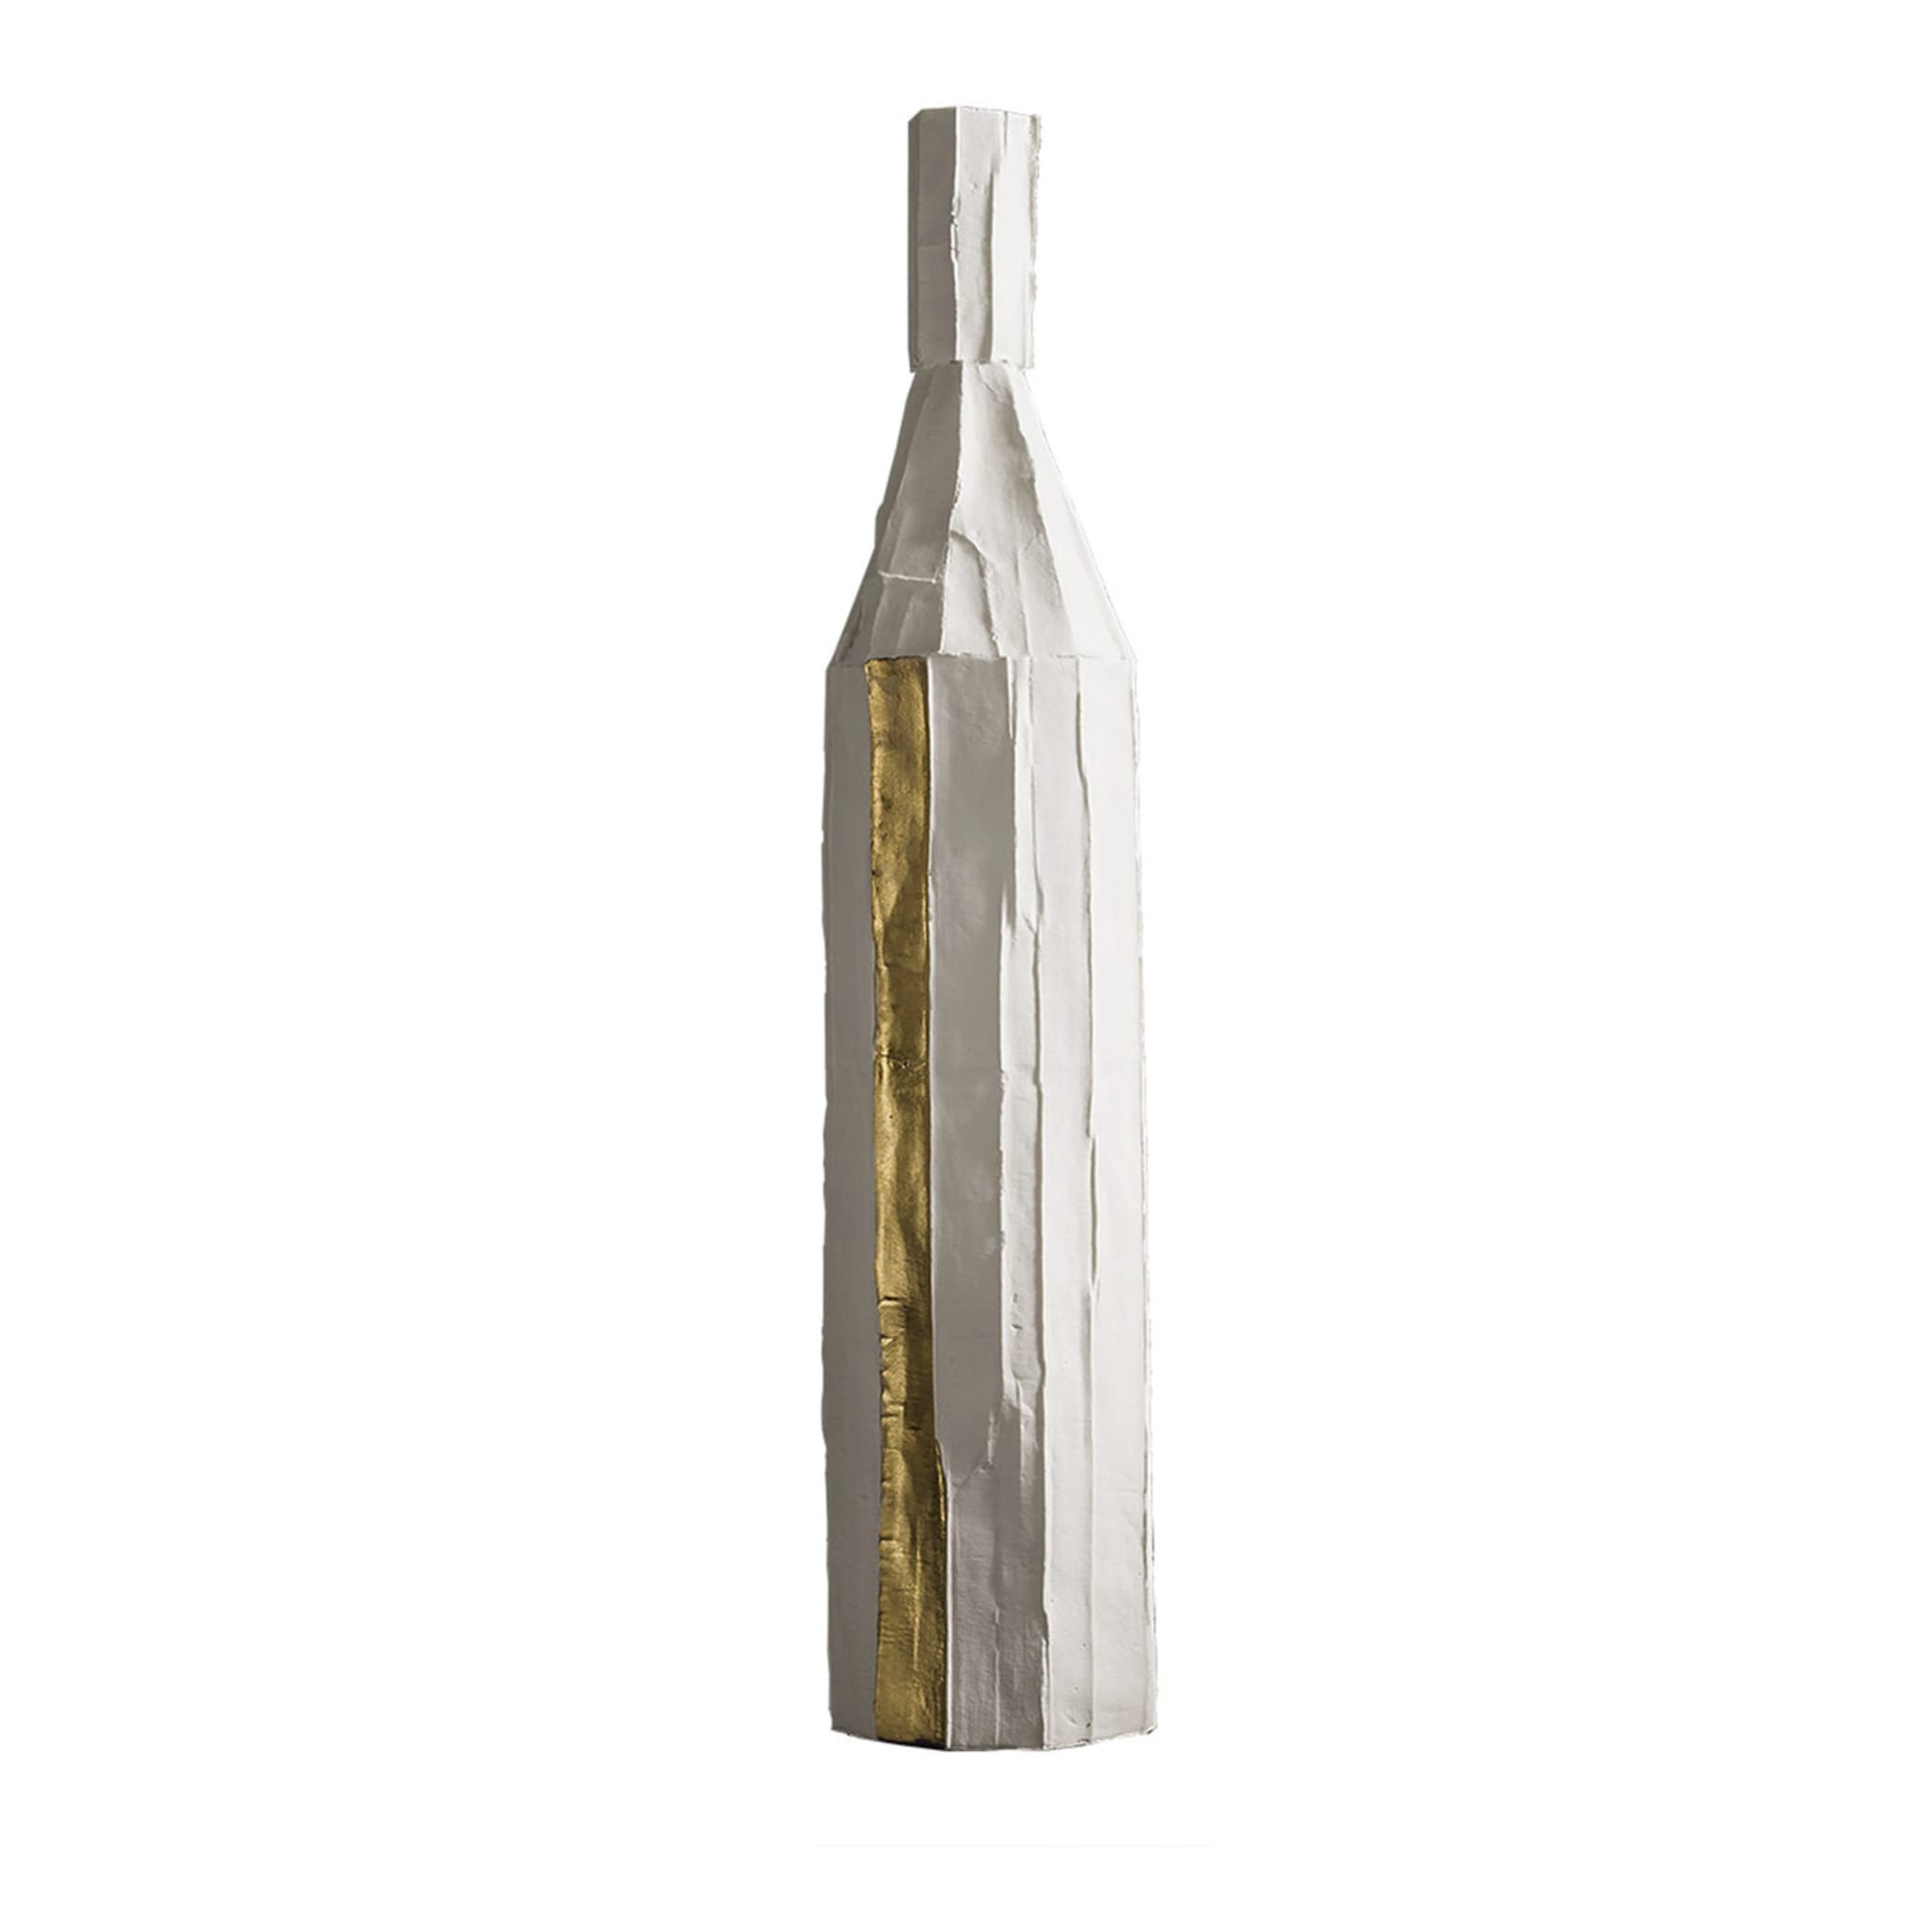 Cartocci Corteccia White and Gold Decorative Bottle - Main view